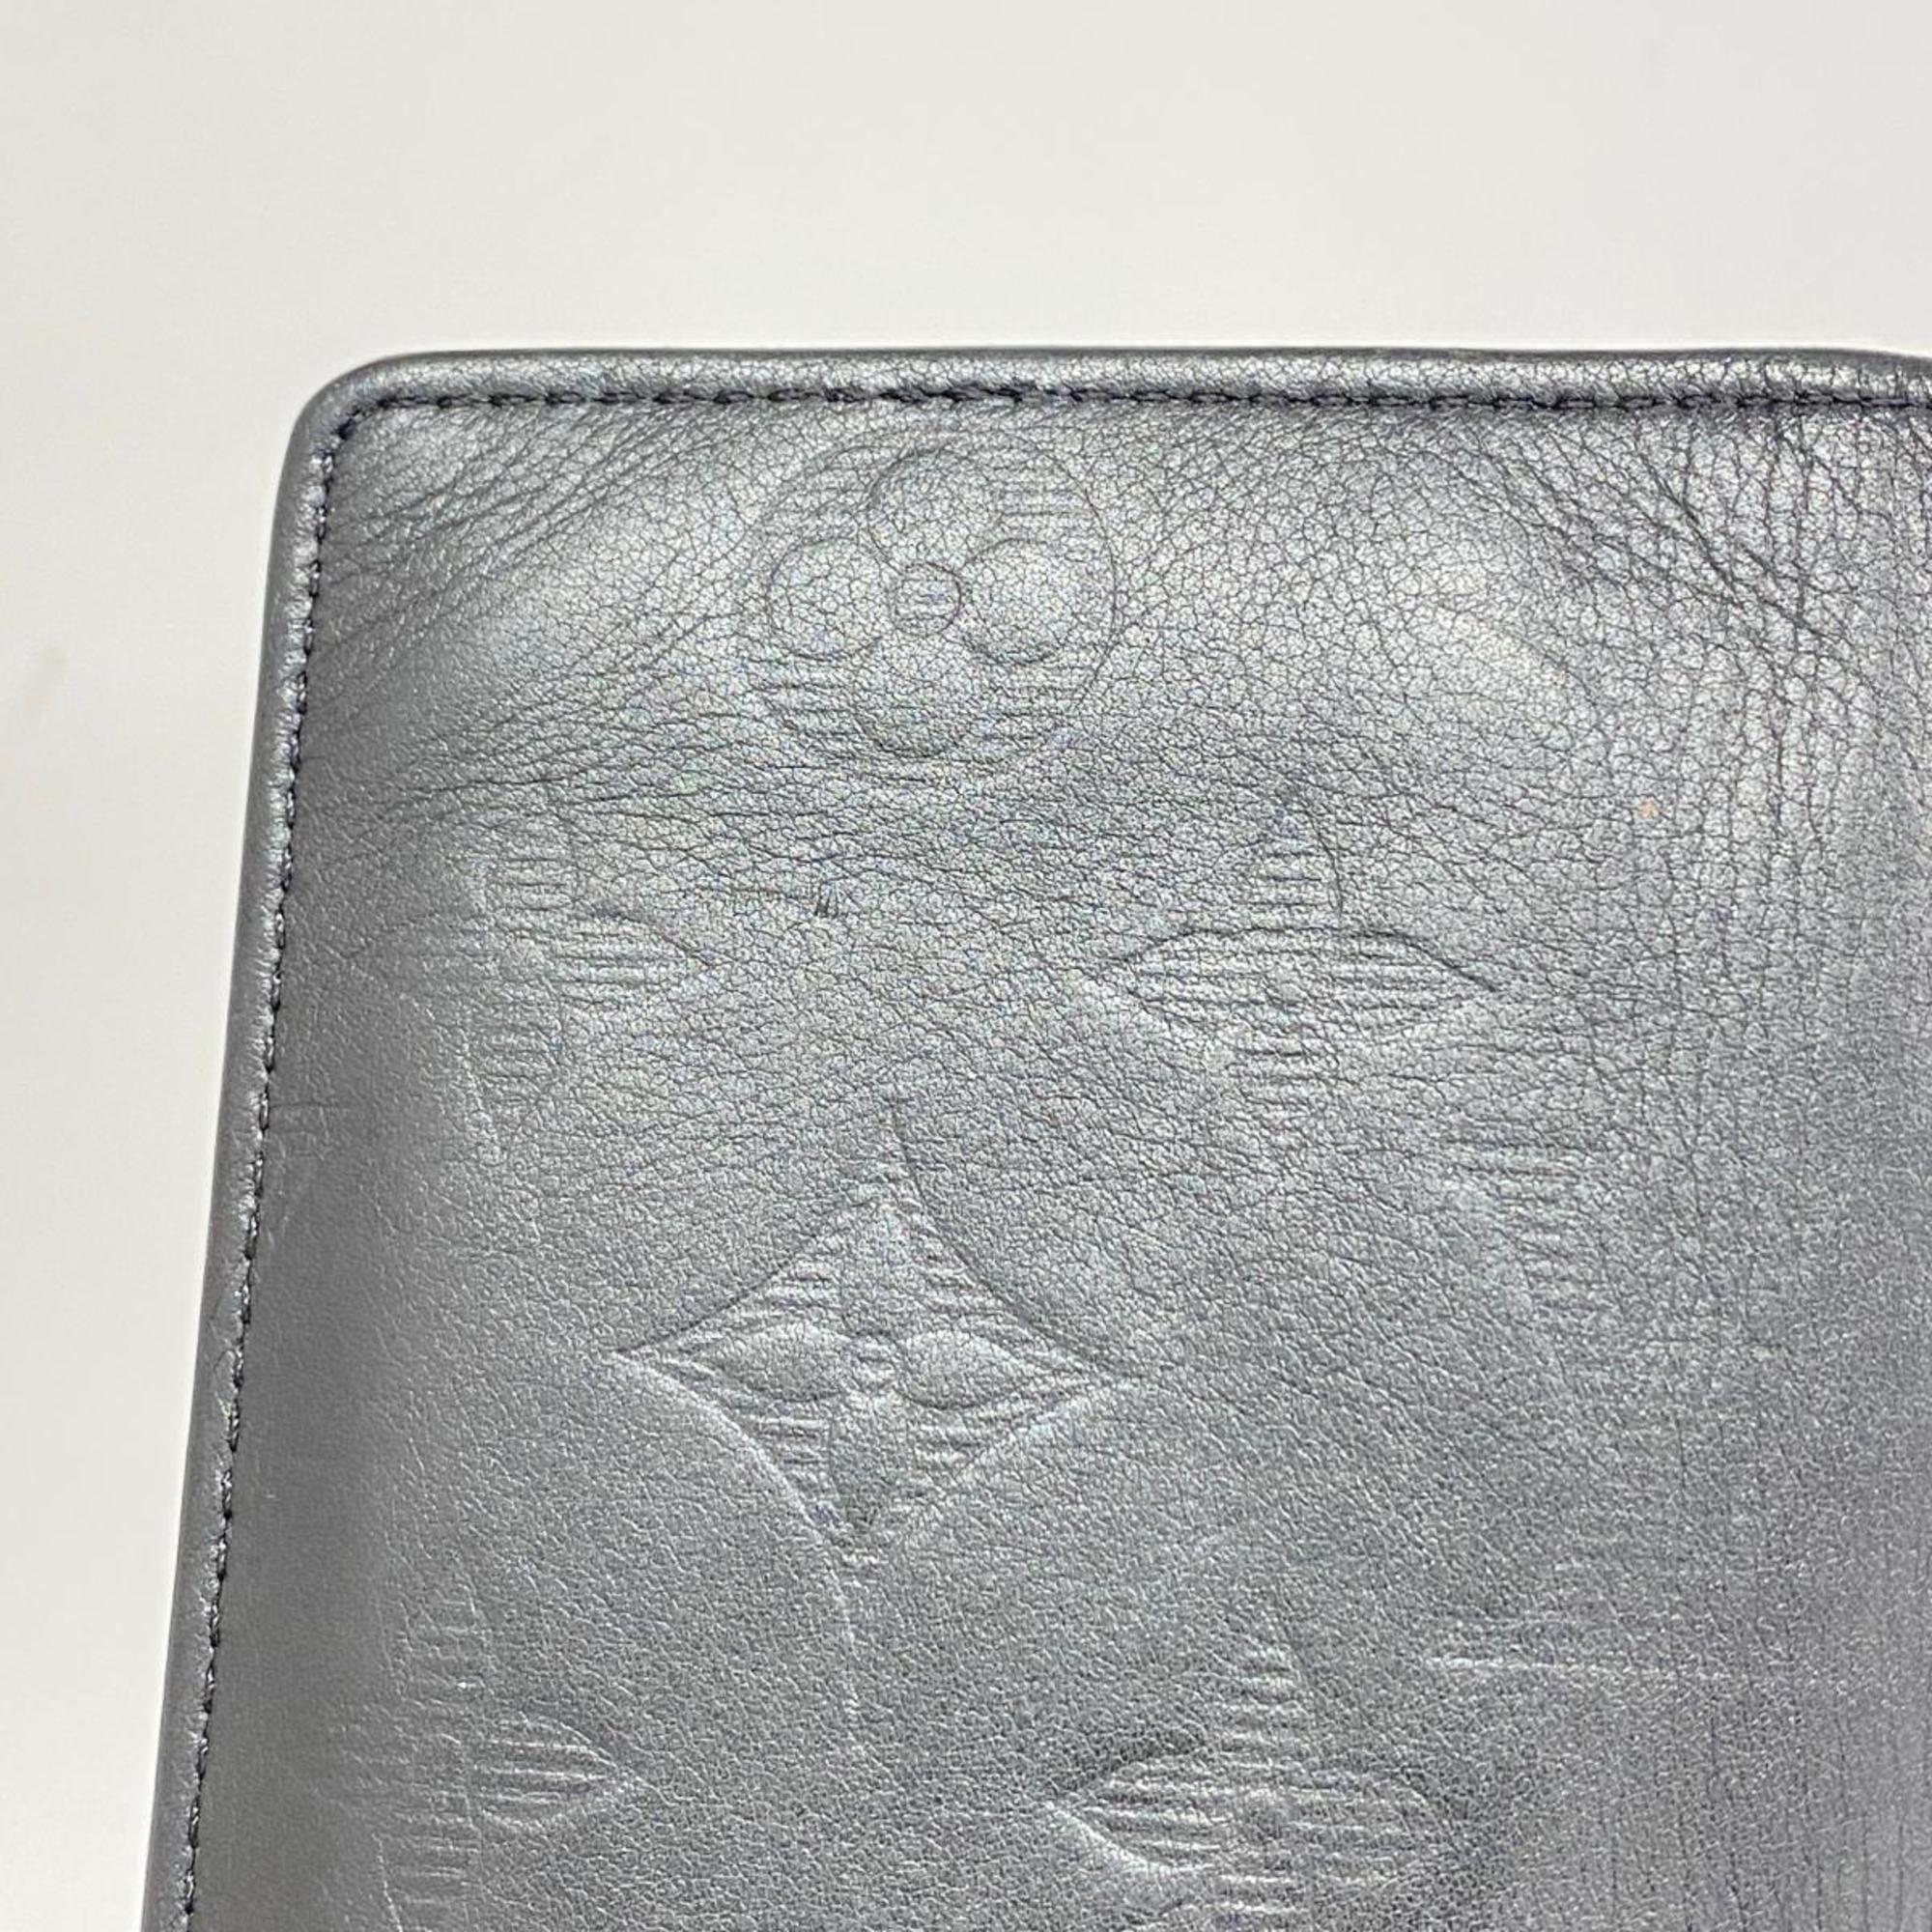 Louis Vuitton Long Wallet Monogram Shadow Portefeuille Brazza M62900 Black Men's